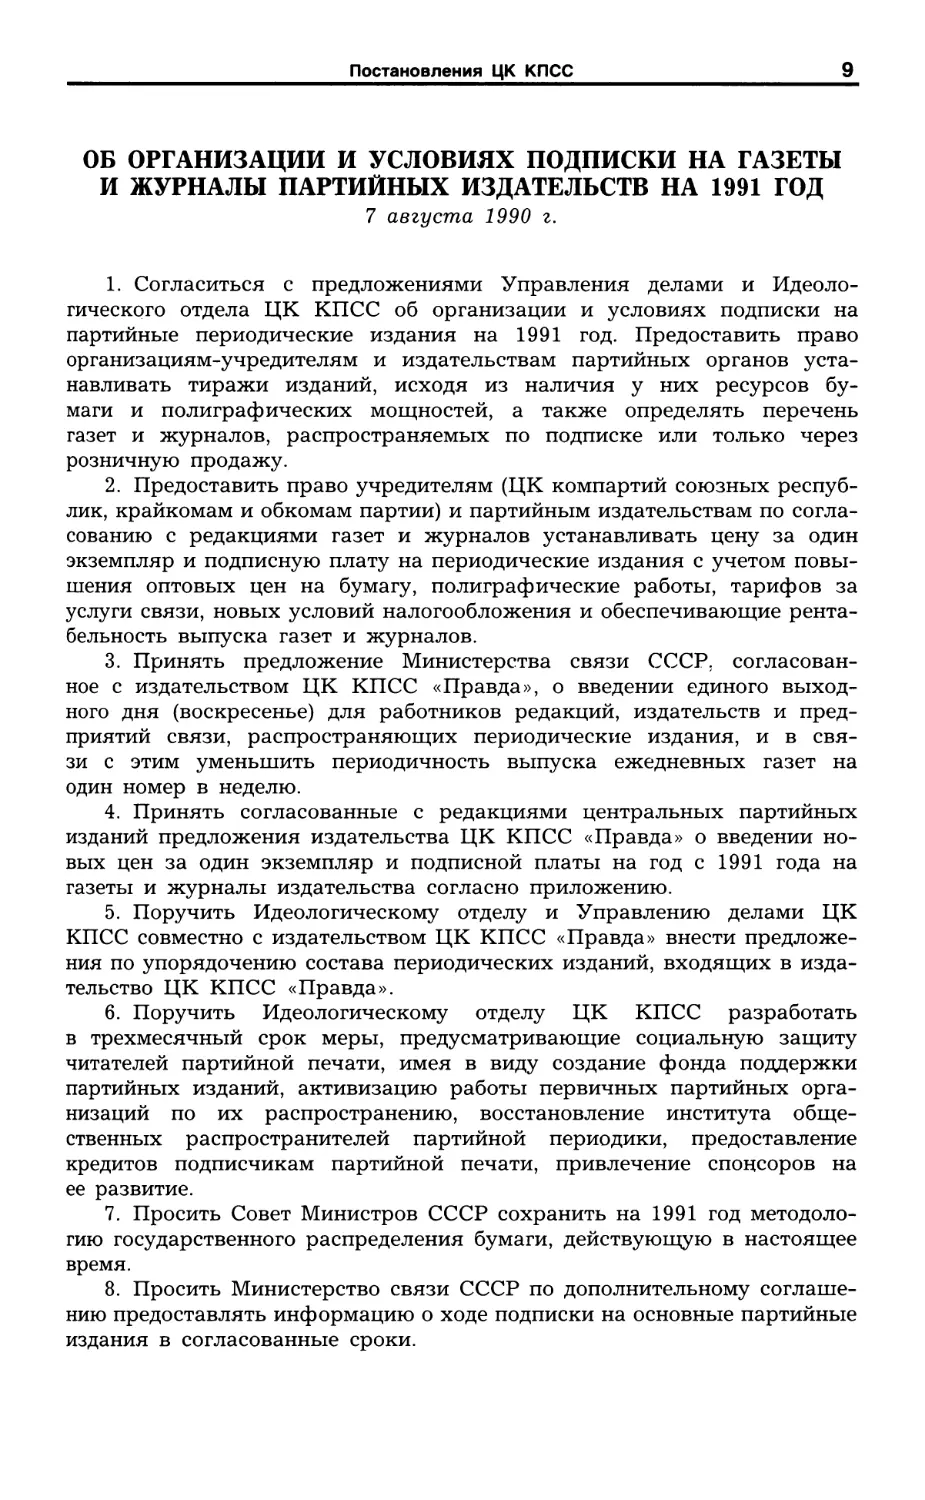 Об организации и условиях подписки на газеты и журналы партийных издательств на 1991 г. 7 августа 1990 г